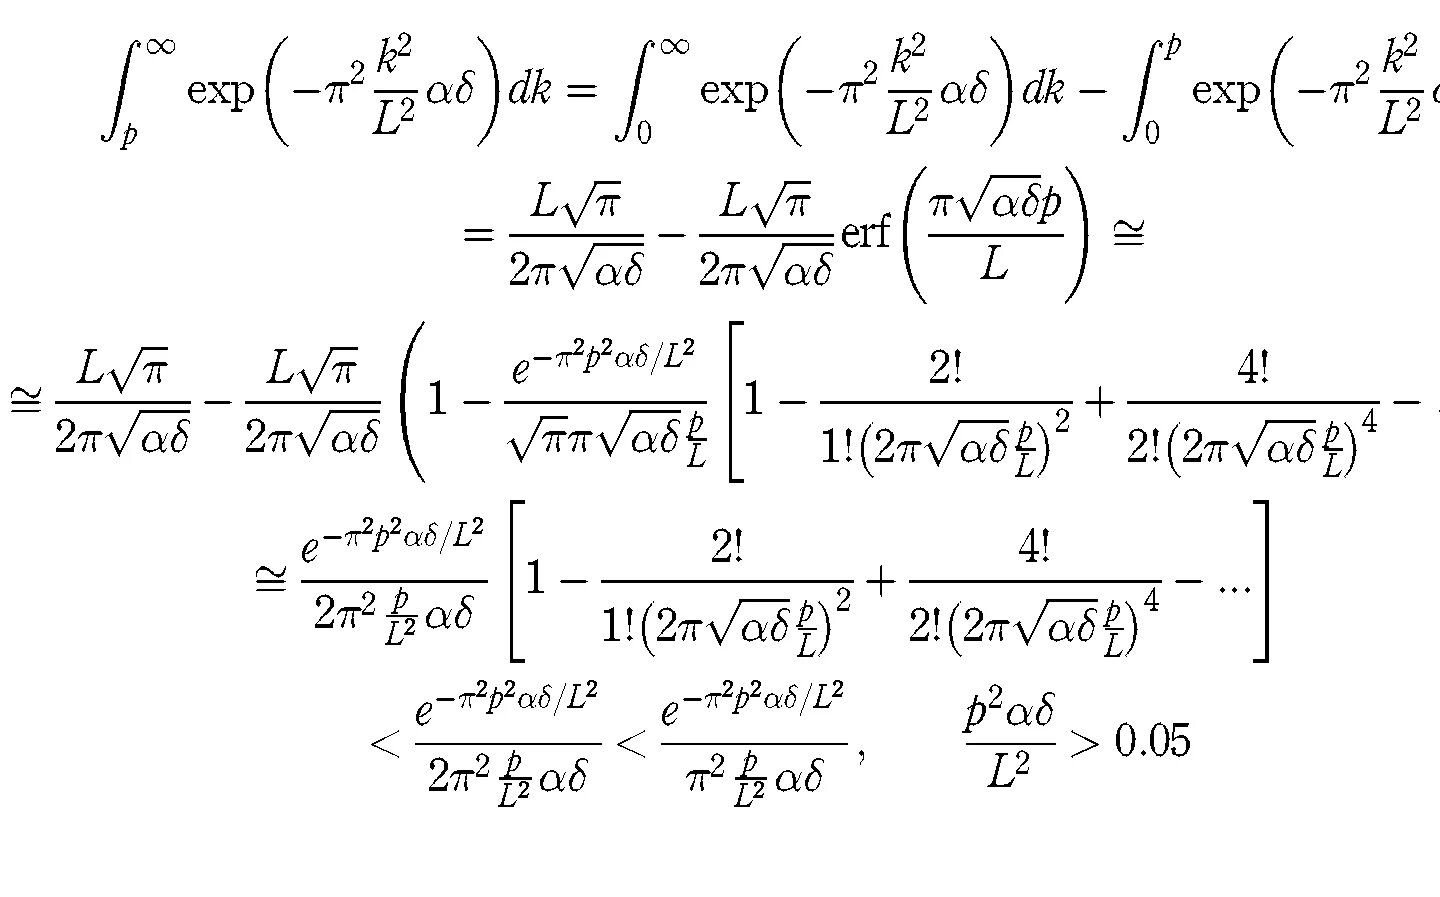 Сложный пример в мире по математике. Сложные математические уравнения. Очень сложное уравнение. Сложные математические формулы. Самоеисложное уравнение.